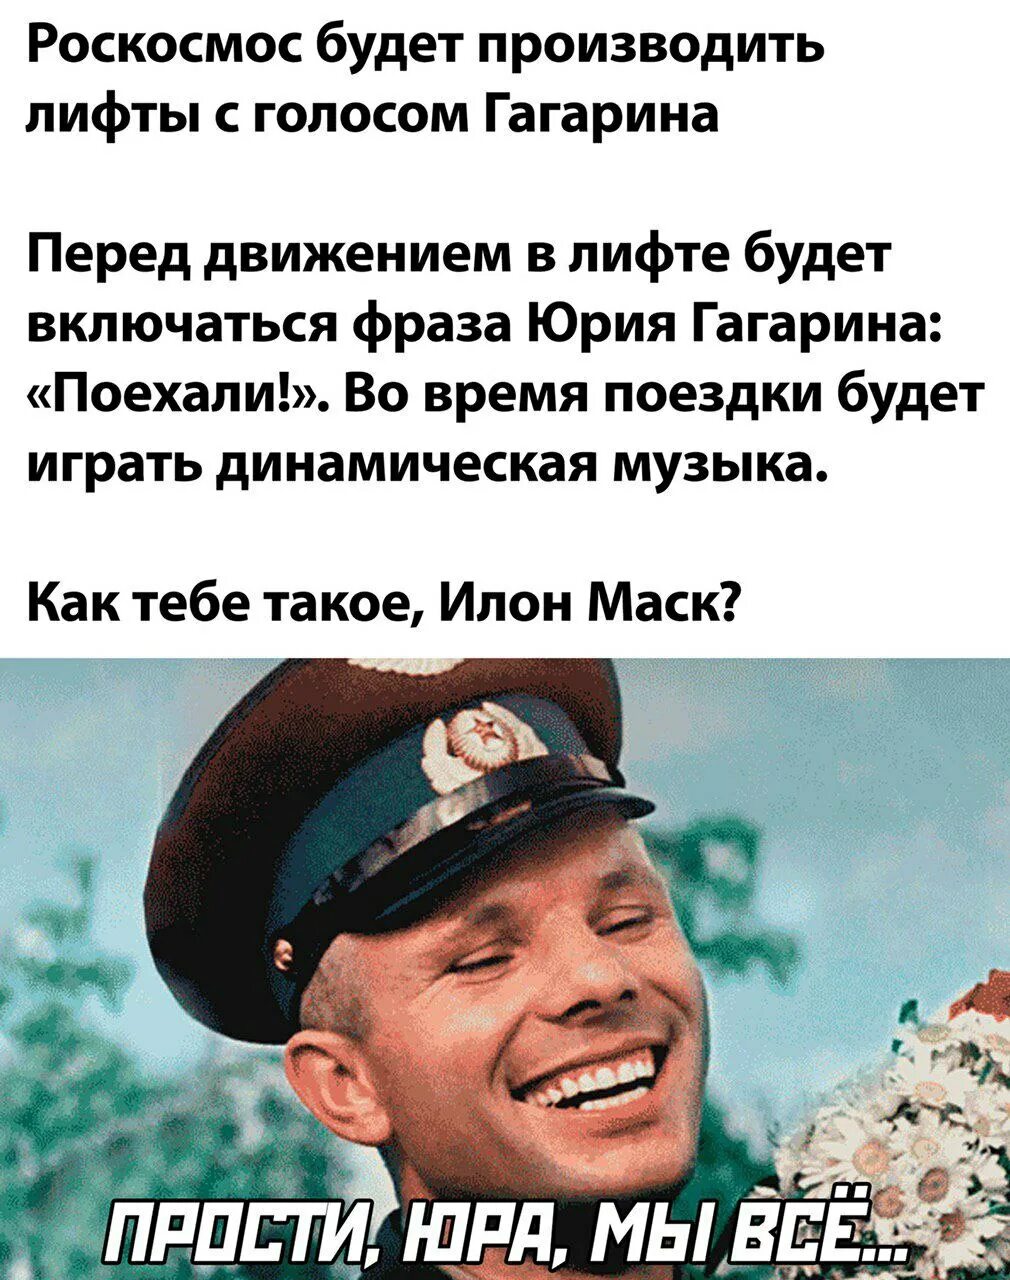 Голос Юрия Гагарина поехали. Приколы про Гагарина. Поехали фраза Юрия Гагарина. Знаменитая фраза Гагарина.